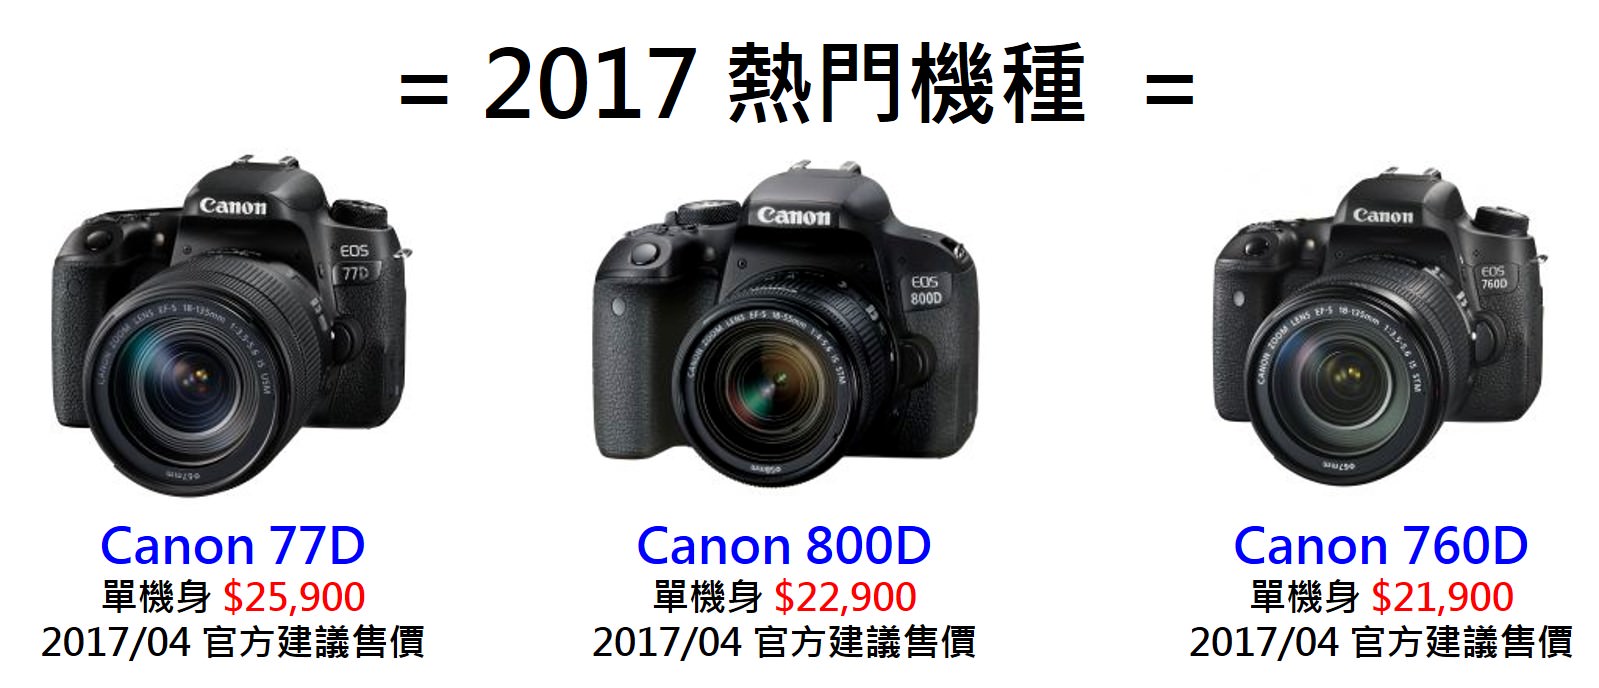 [聊攝影184] Canon 相機推薦 全系列機種比較整理 & 採購指南 , Canon 5D4 至 EOS M6 全比較